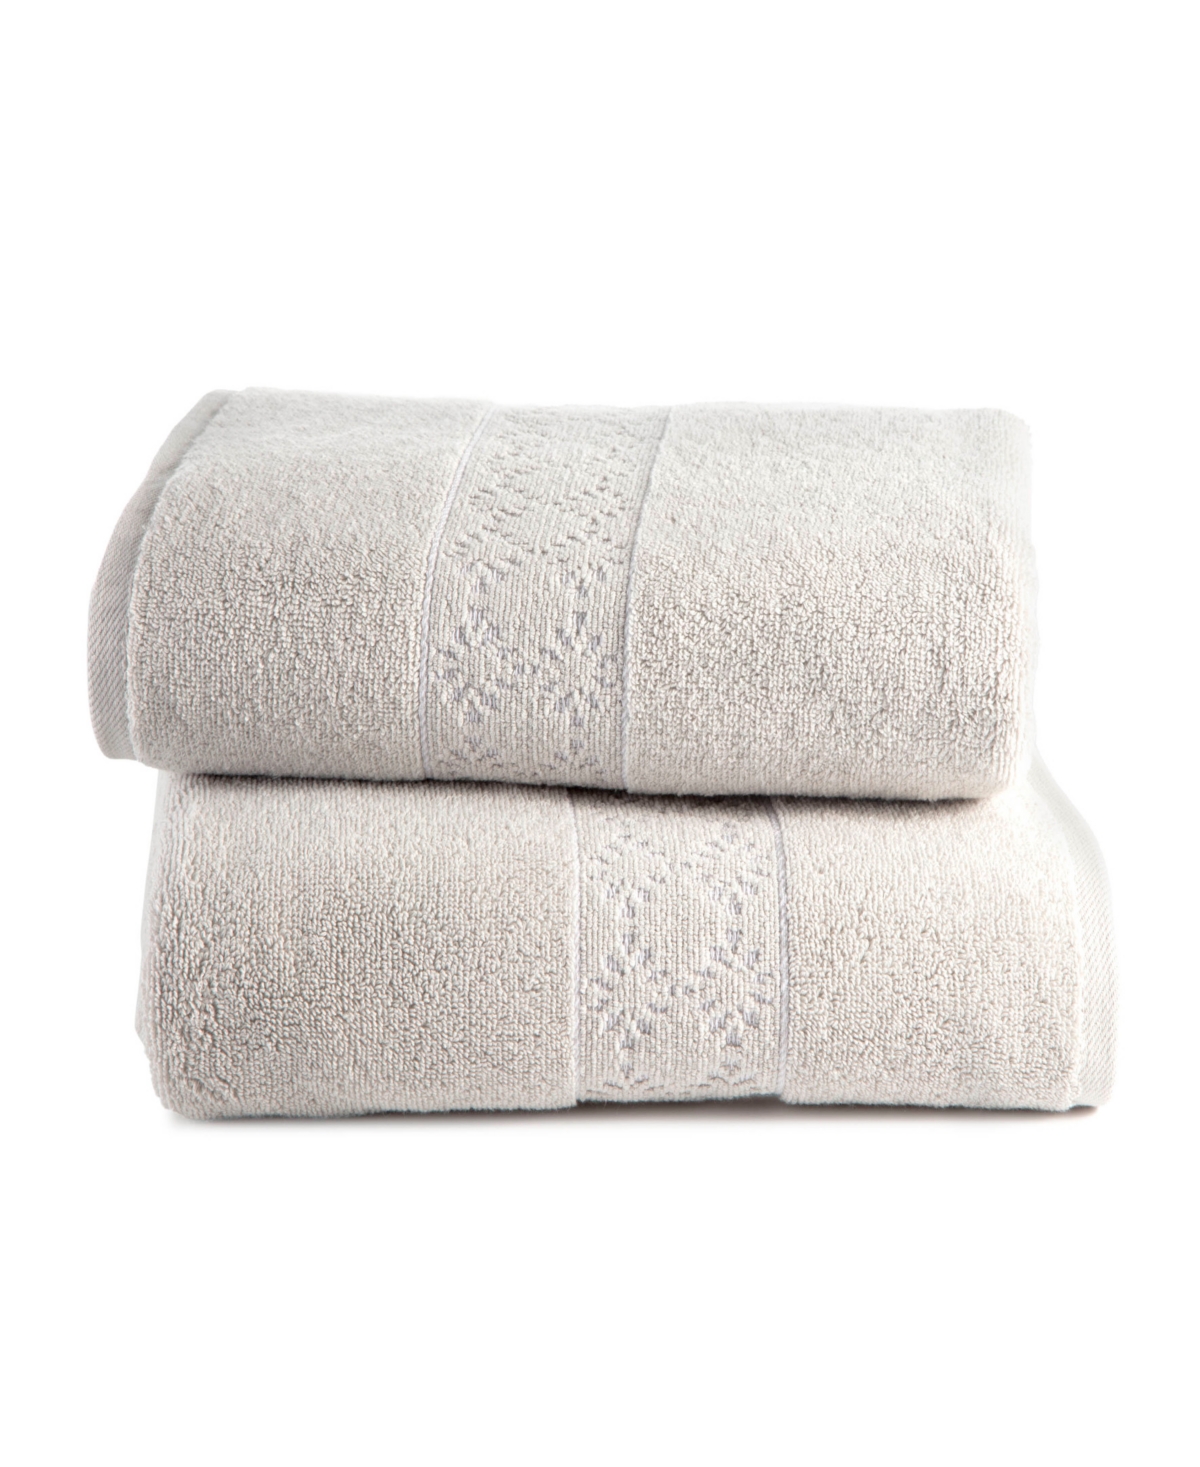 Clean Design Home X Martex Allergen-resistant Savoy 2 Pack Bath Towel Set In Gray